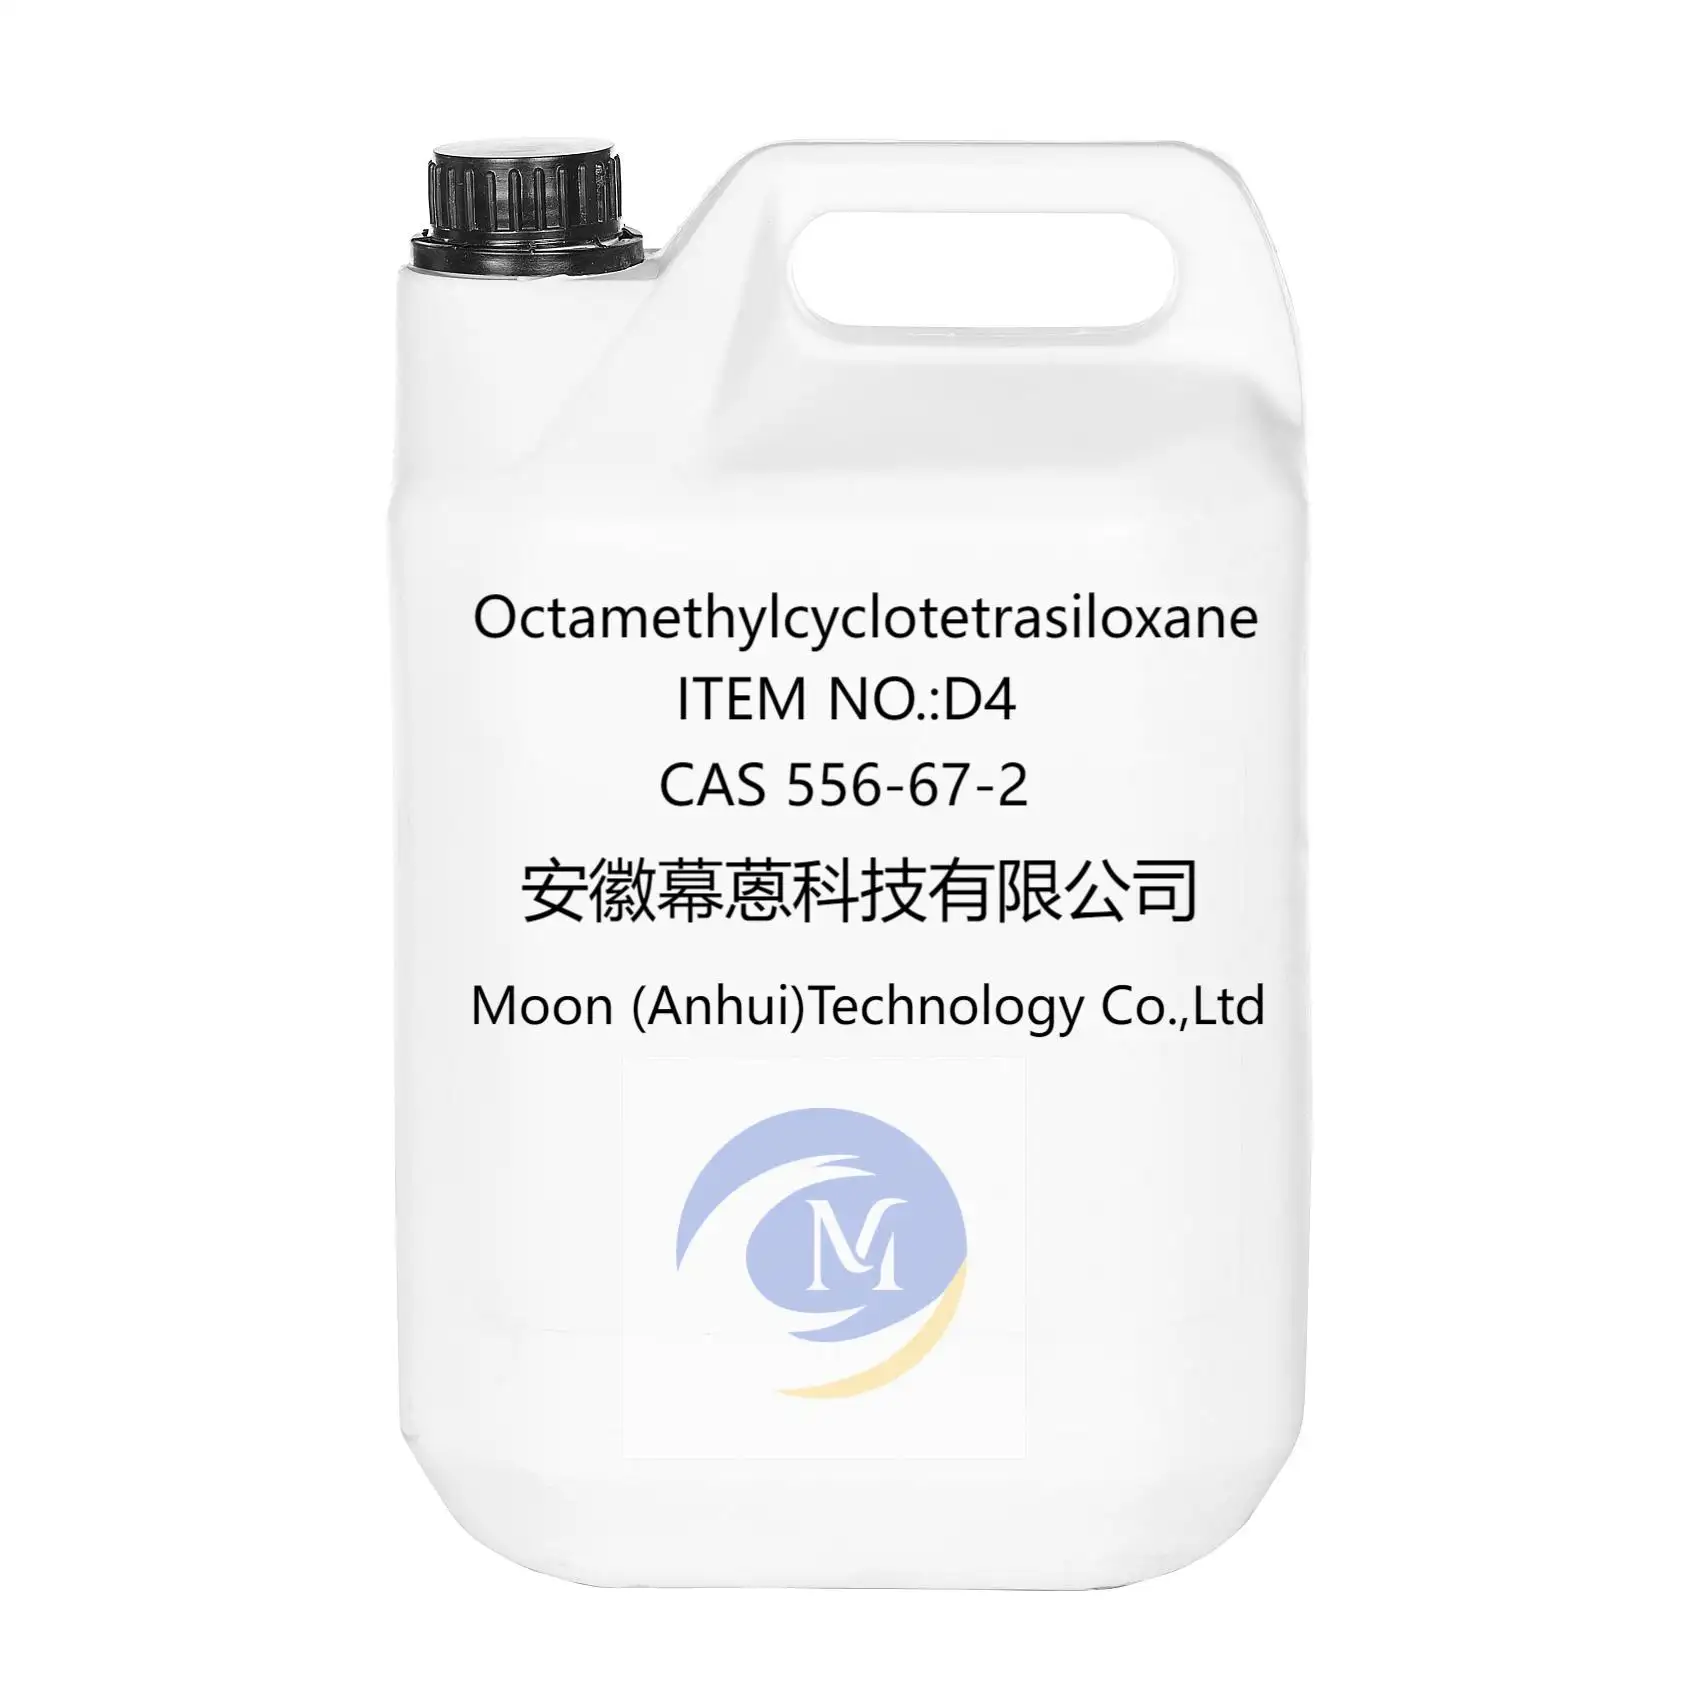 Organisches Silikonsilan-Octa methyl cyclo tetra siloxan D4 CAS 556-67-2